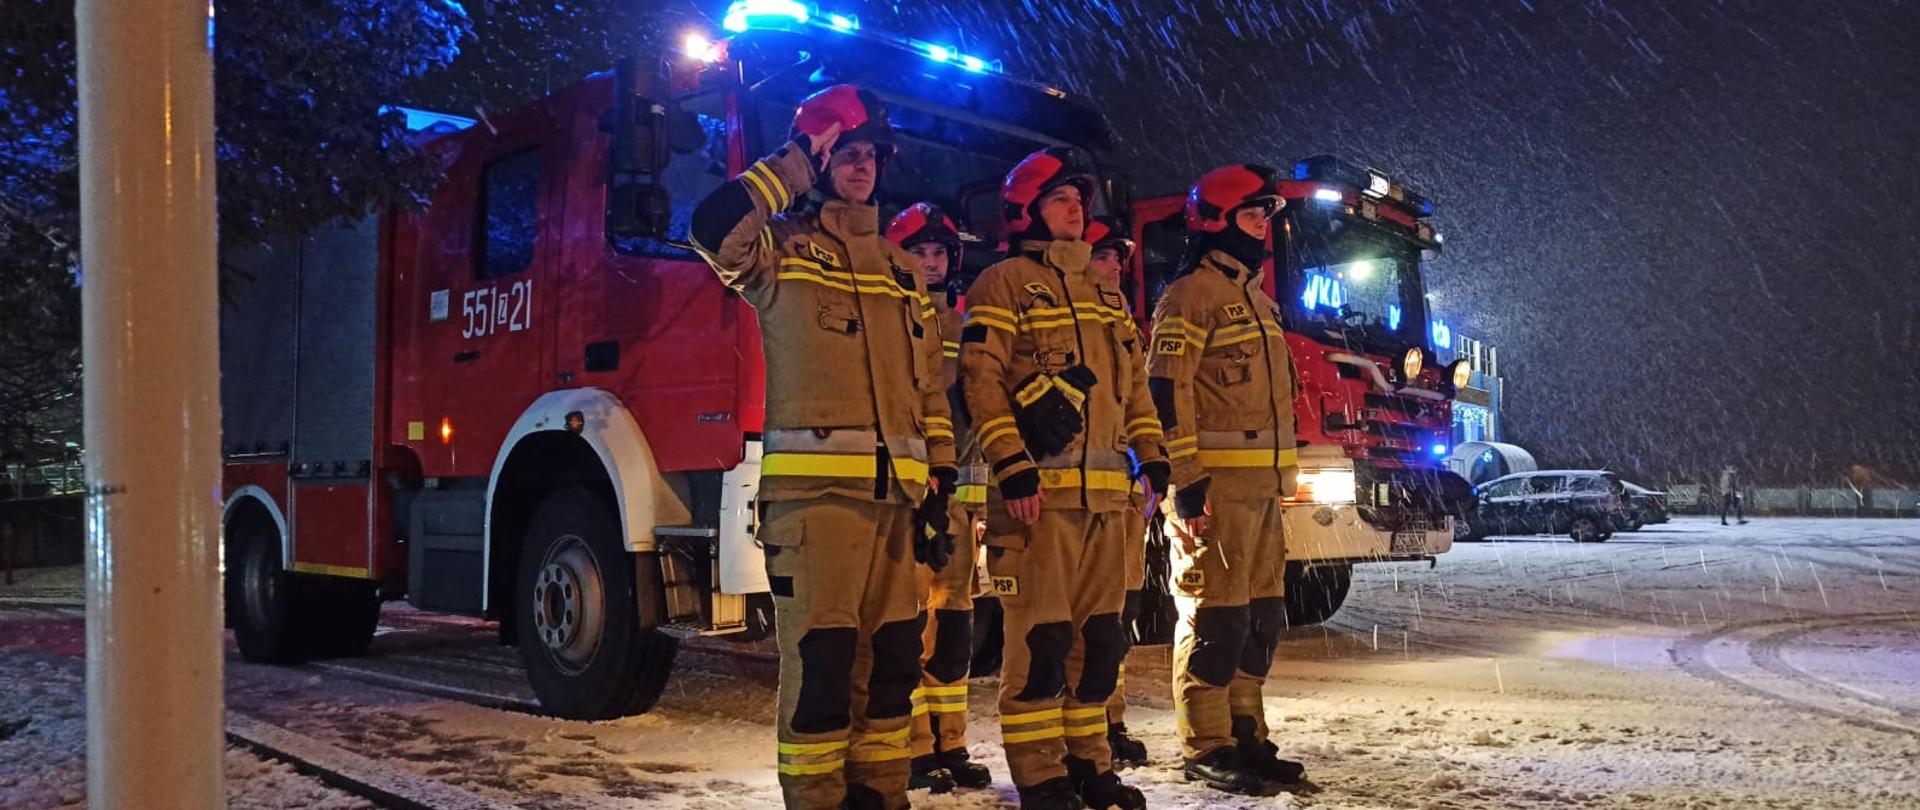 Zdjęcie przedstawia strażaków ustawionych w dwuszeregu przed dwoma samochodami strażackim z włączonymi światłami mijania oraz niebieskimi błyskowymi. Jeden ze strażaków salutuję. Zdjęcie wykonano nocną porą. Podczas zdjęcia występowały opady śniegu.